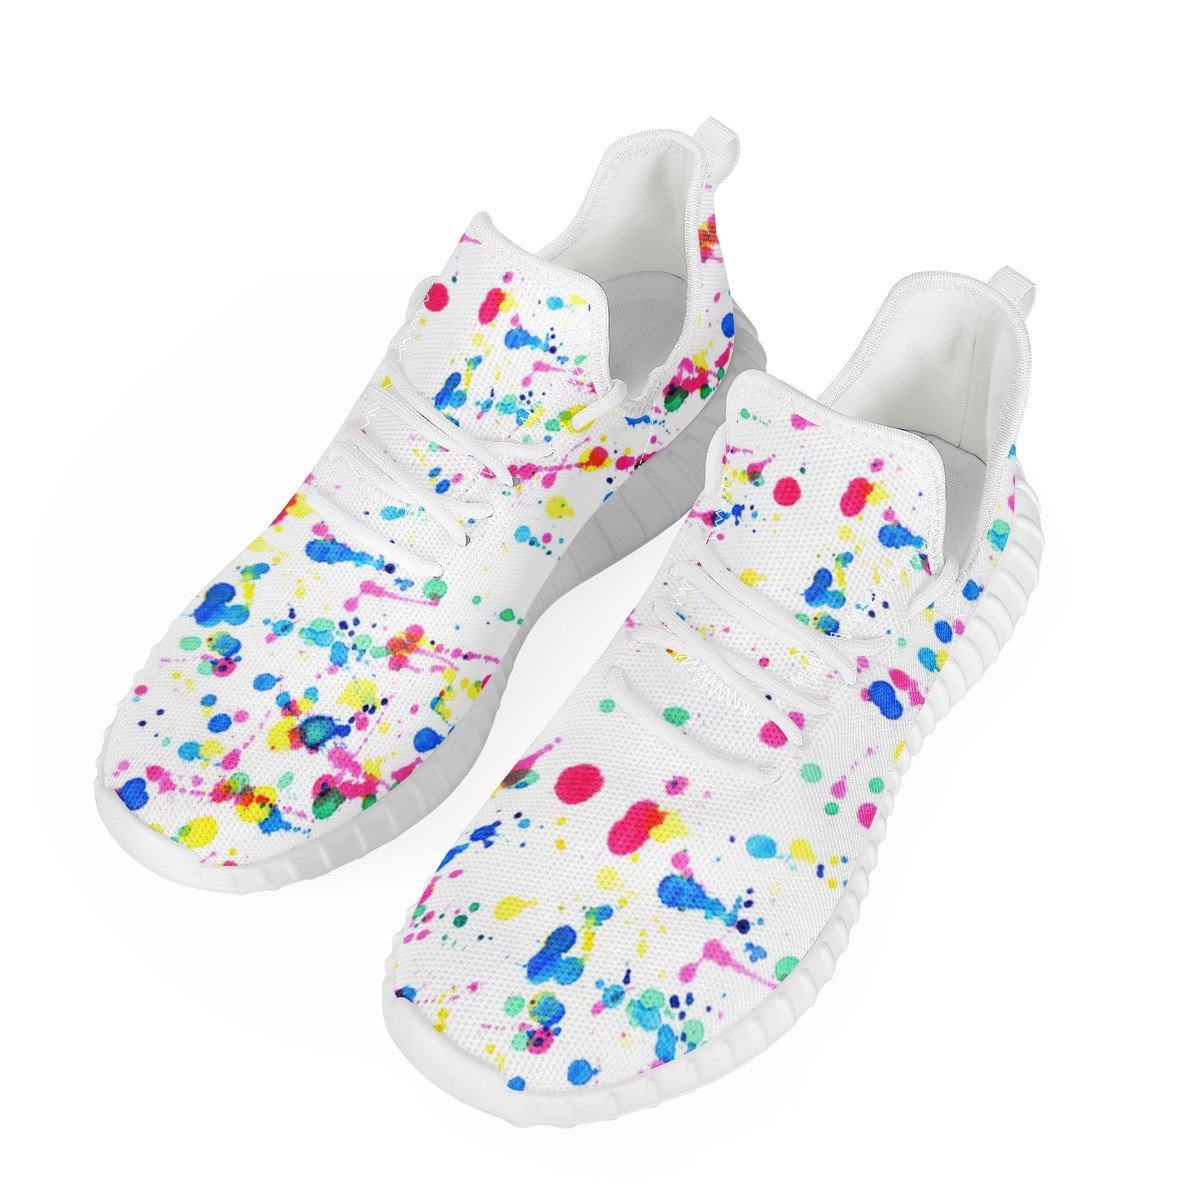 Paint Splattered Mesh Knit Sneaker Yeezy, Splatter noxfan Women US5 (EU35) 